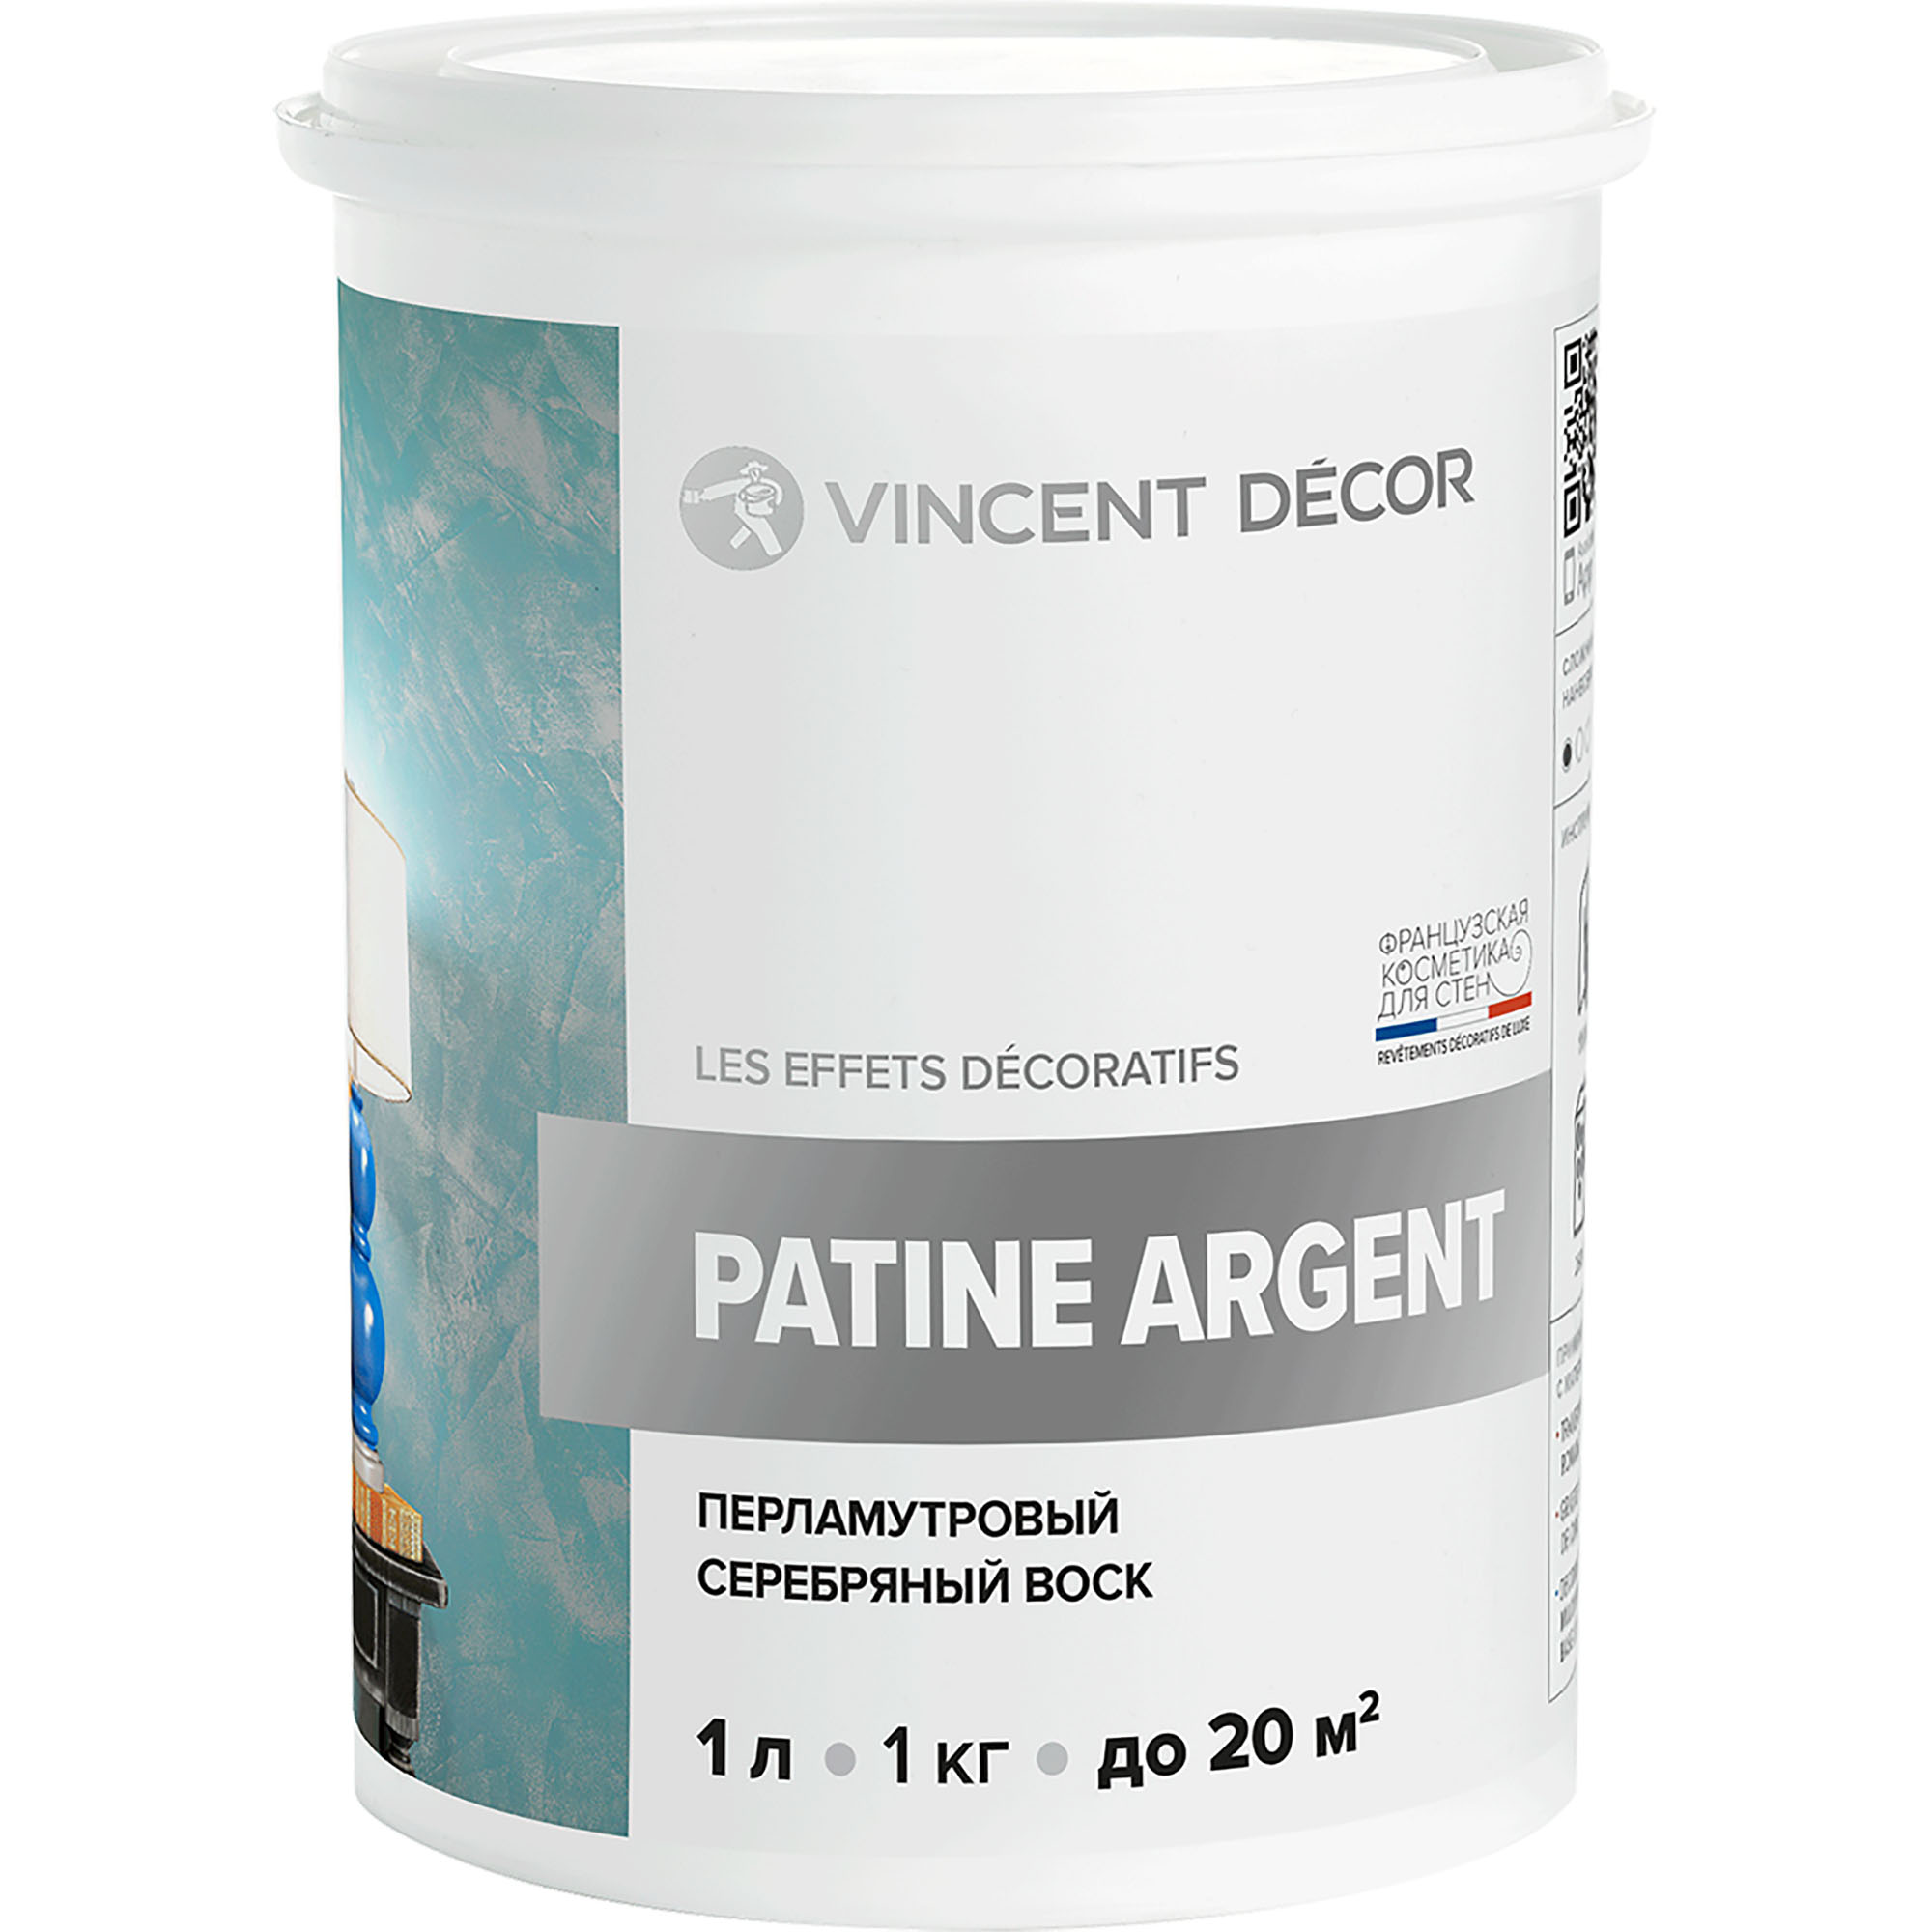 Перламутровый серебряный воск Vincent Decor Patine Argent для декоративных покрытий 1 кг грунтовка для декоративных покрытий vincent decor sous couсhe 2 5 л